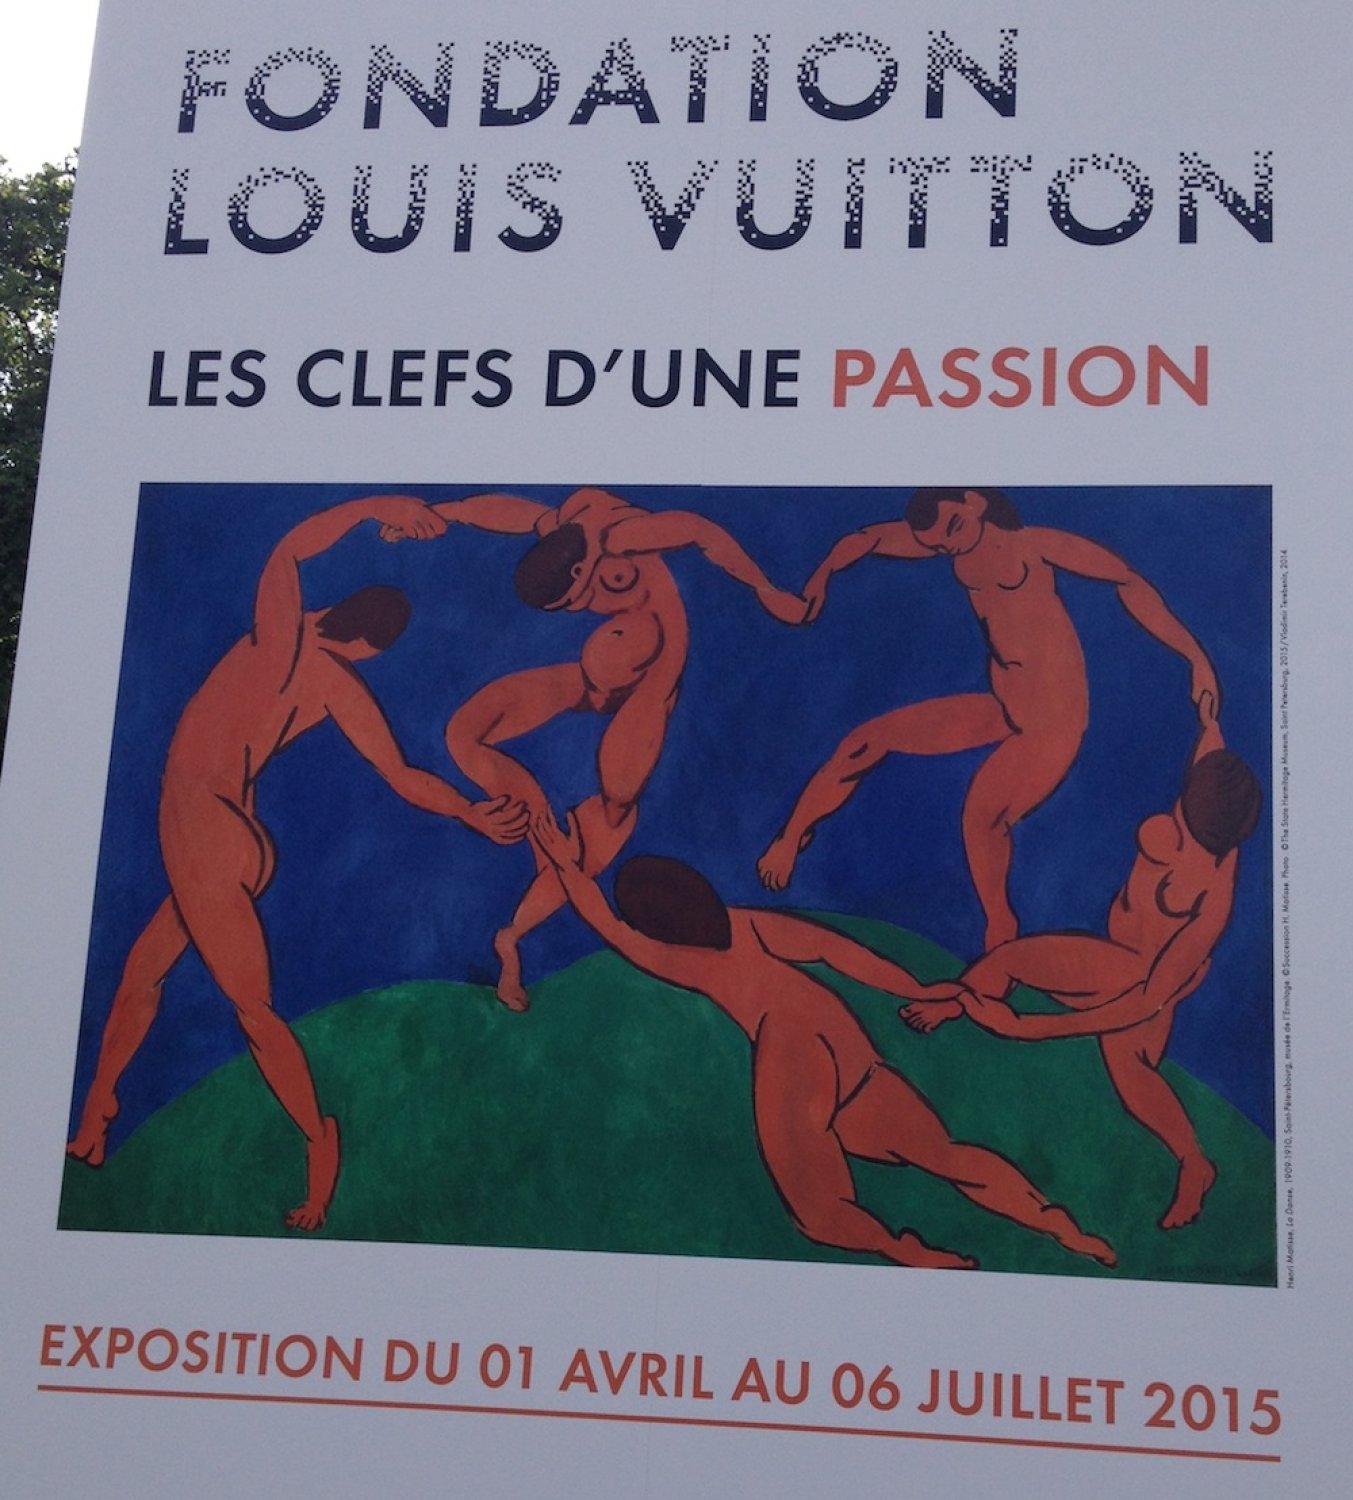 Les clefs d'une passion à la Fondation Louis Vuitton